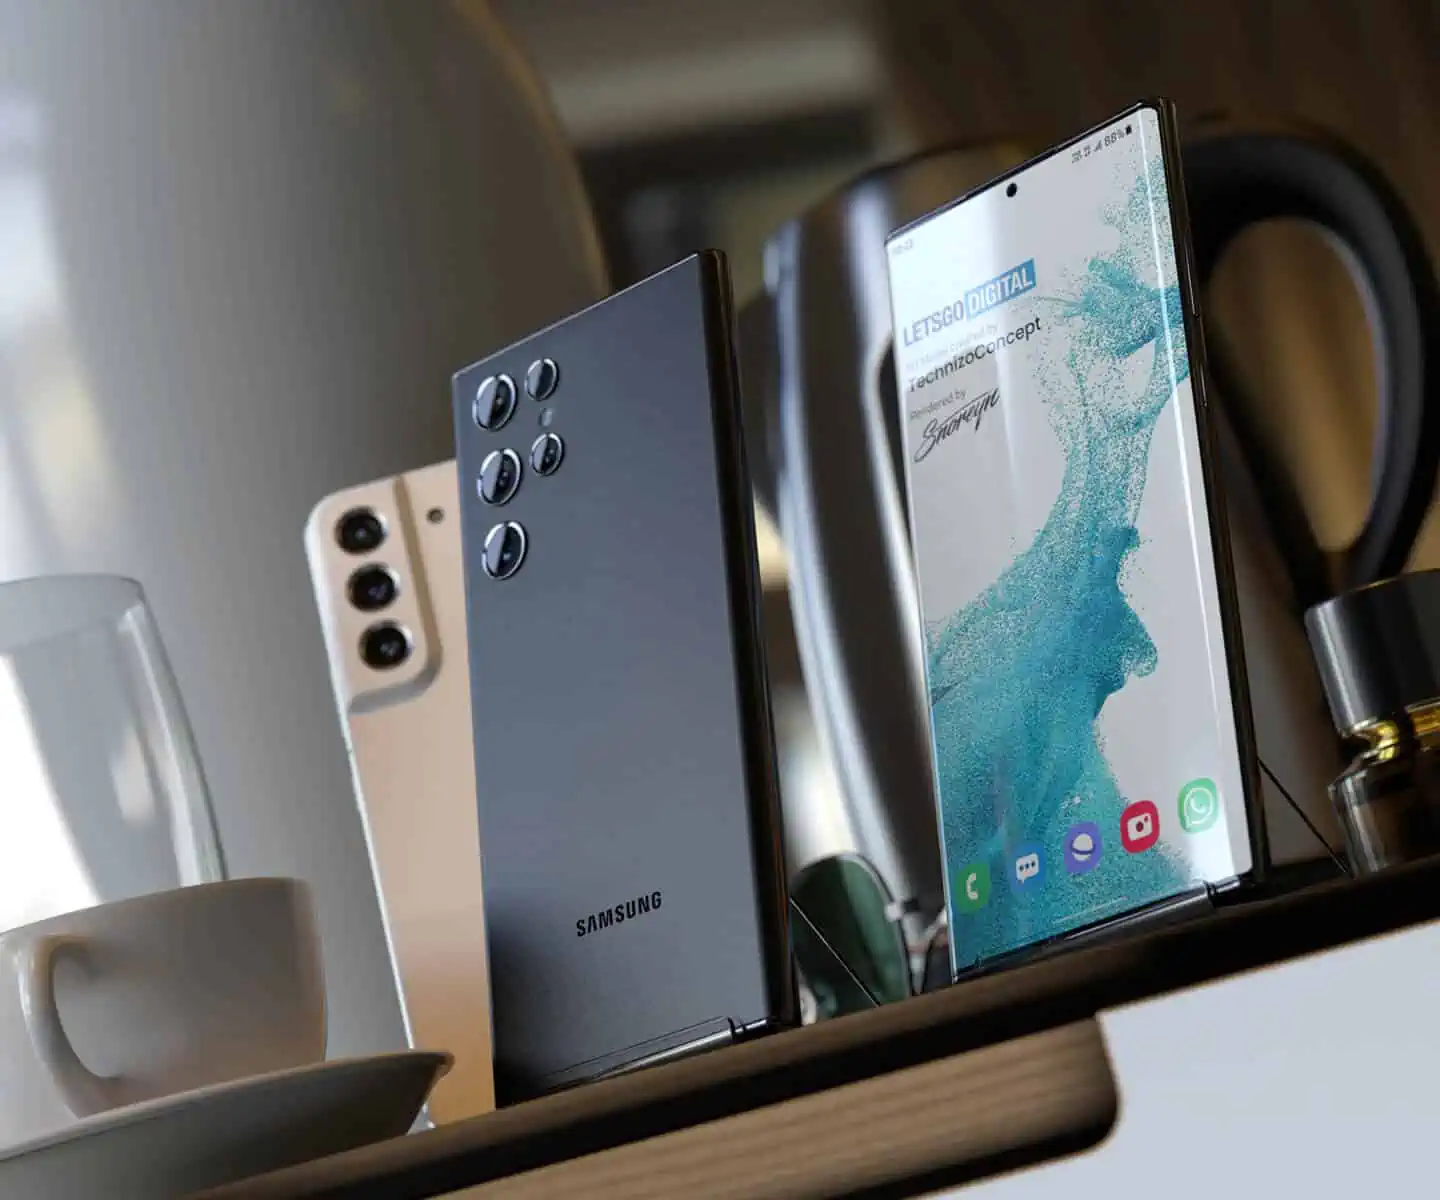 Samsung Galaxy S22: Bạn đang tìm kiếm một chiếc điện thoại thông minh mới thay thế cho chiếc cũ của mình? Hãy đón chào sự ra mắt của Samsung Galaxy S22, chiếc điện thoại mới nhất của Samsung với nhiều tính năng vượt trội. Với một màn hình vô cực, camera chất lượng cao và khả năng hoạt động mượt mà, đây chắc chắn sẽ là chiếc điện thoại lý tưởng cho bạn.